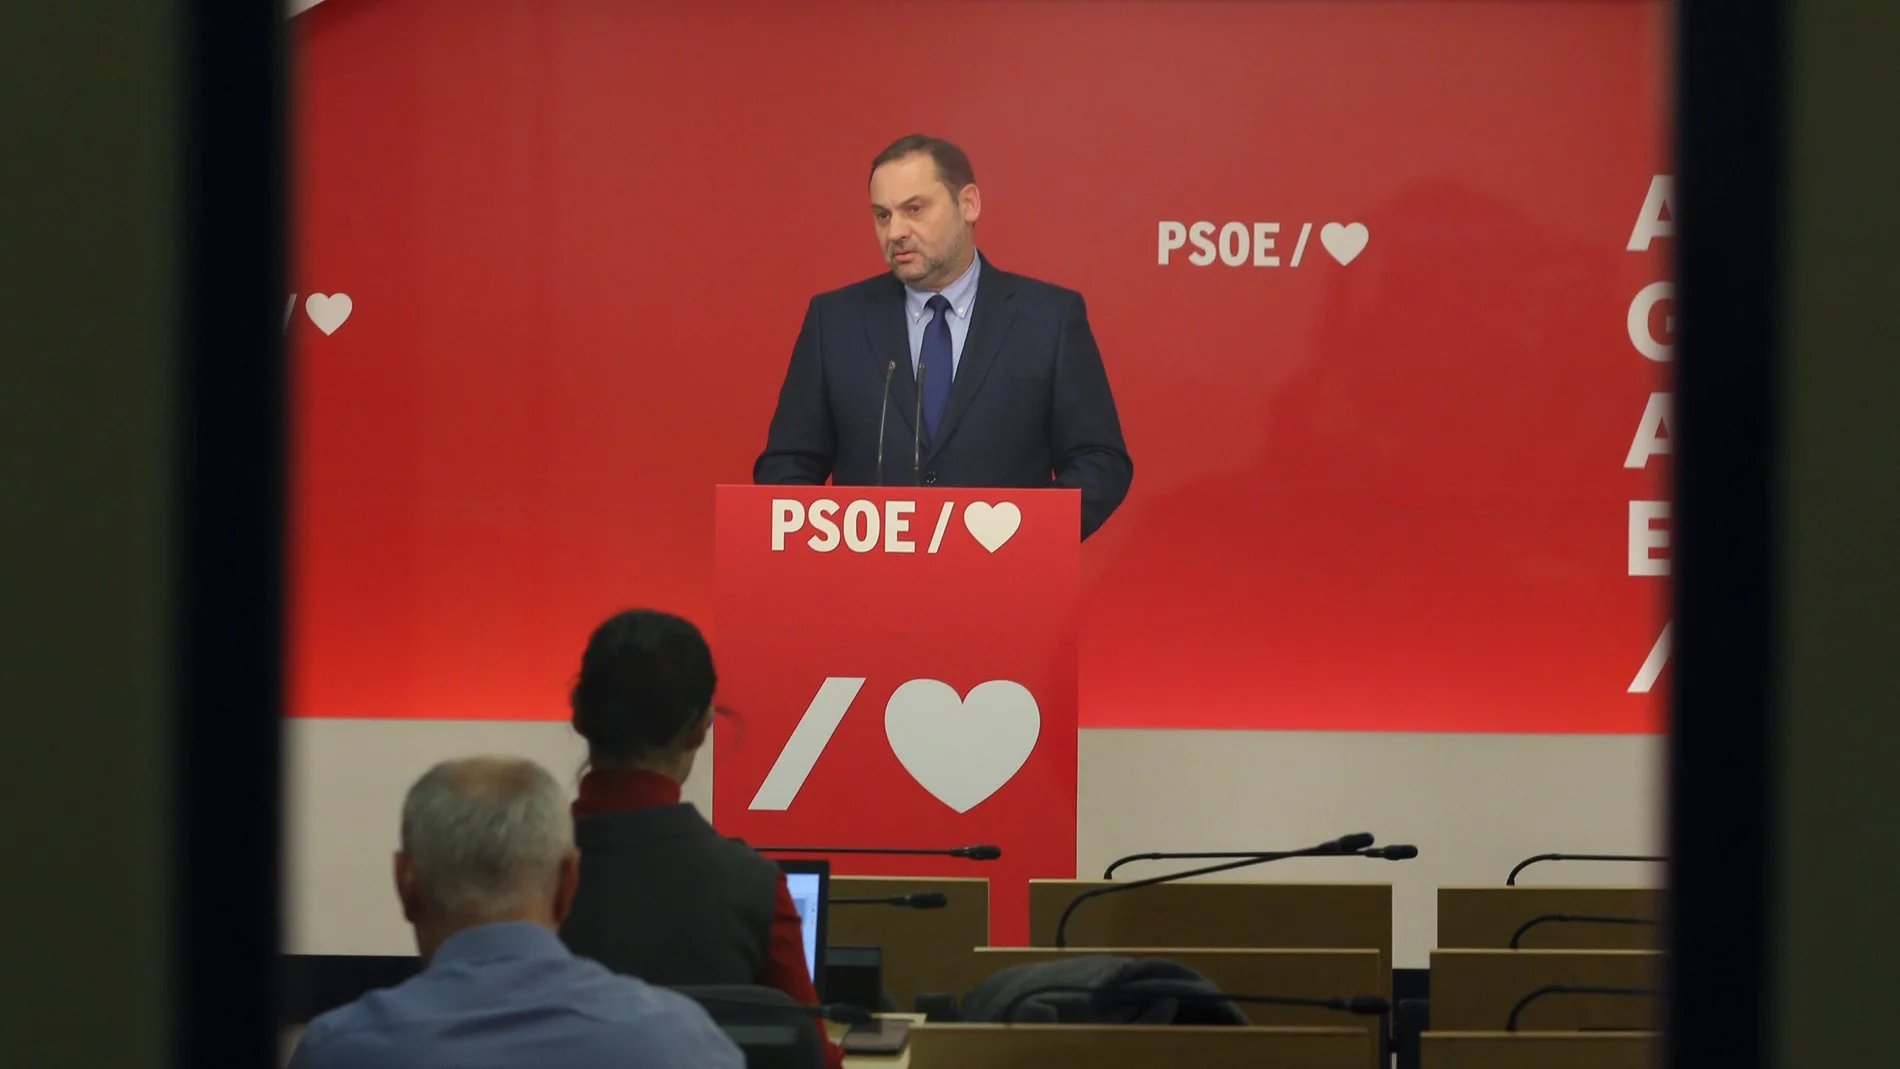 El PSOE dice condena ERE no afecta ni al Gobierno ni a dirección del partido